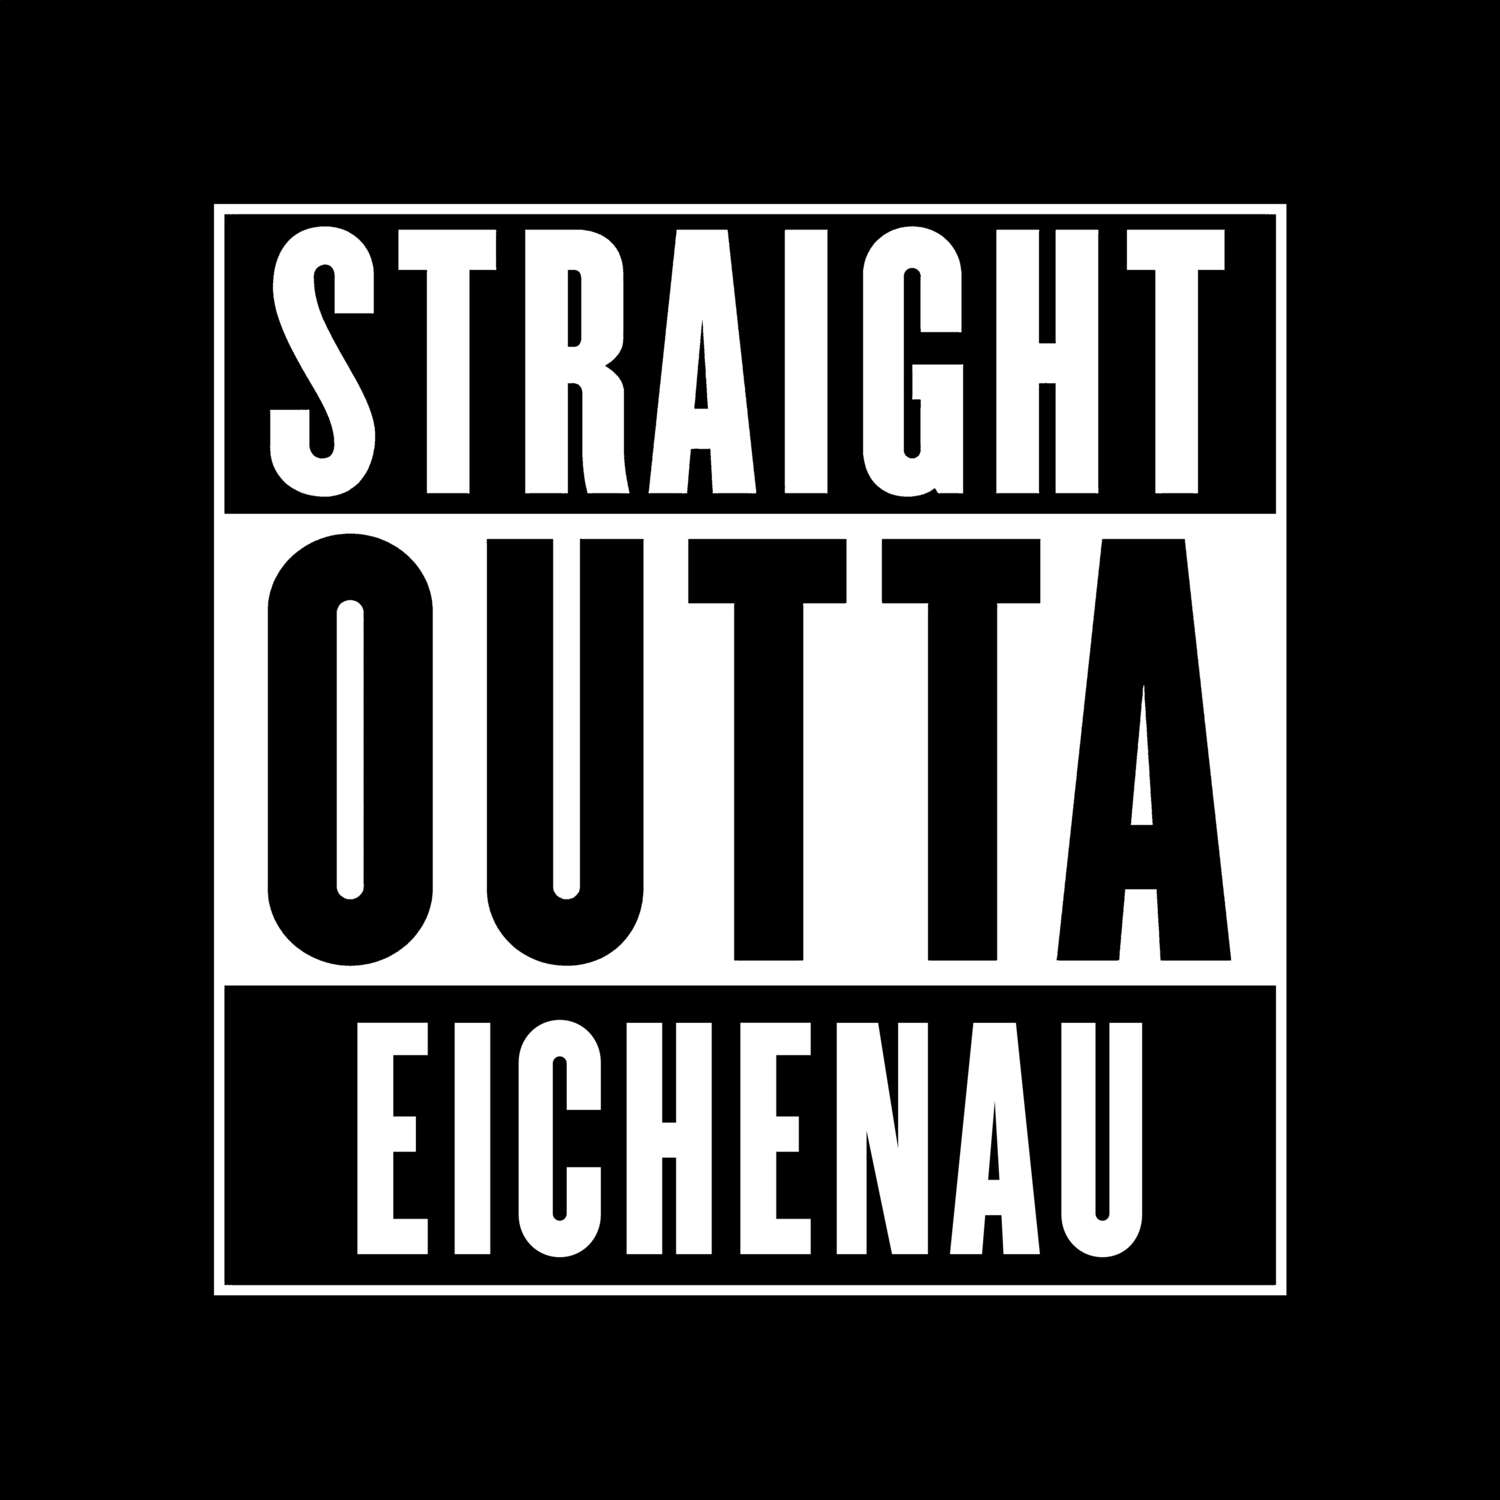 Eichenau T-Shirt »Straight Outta«